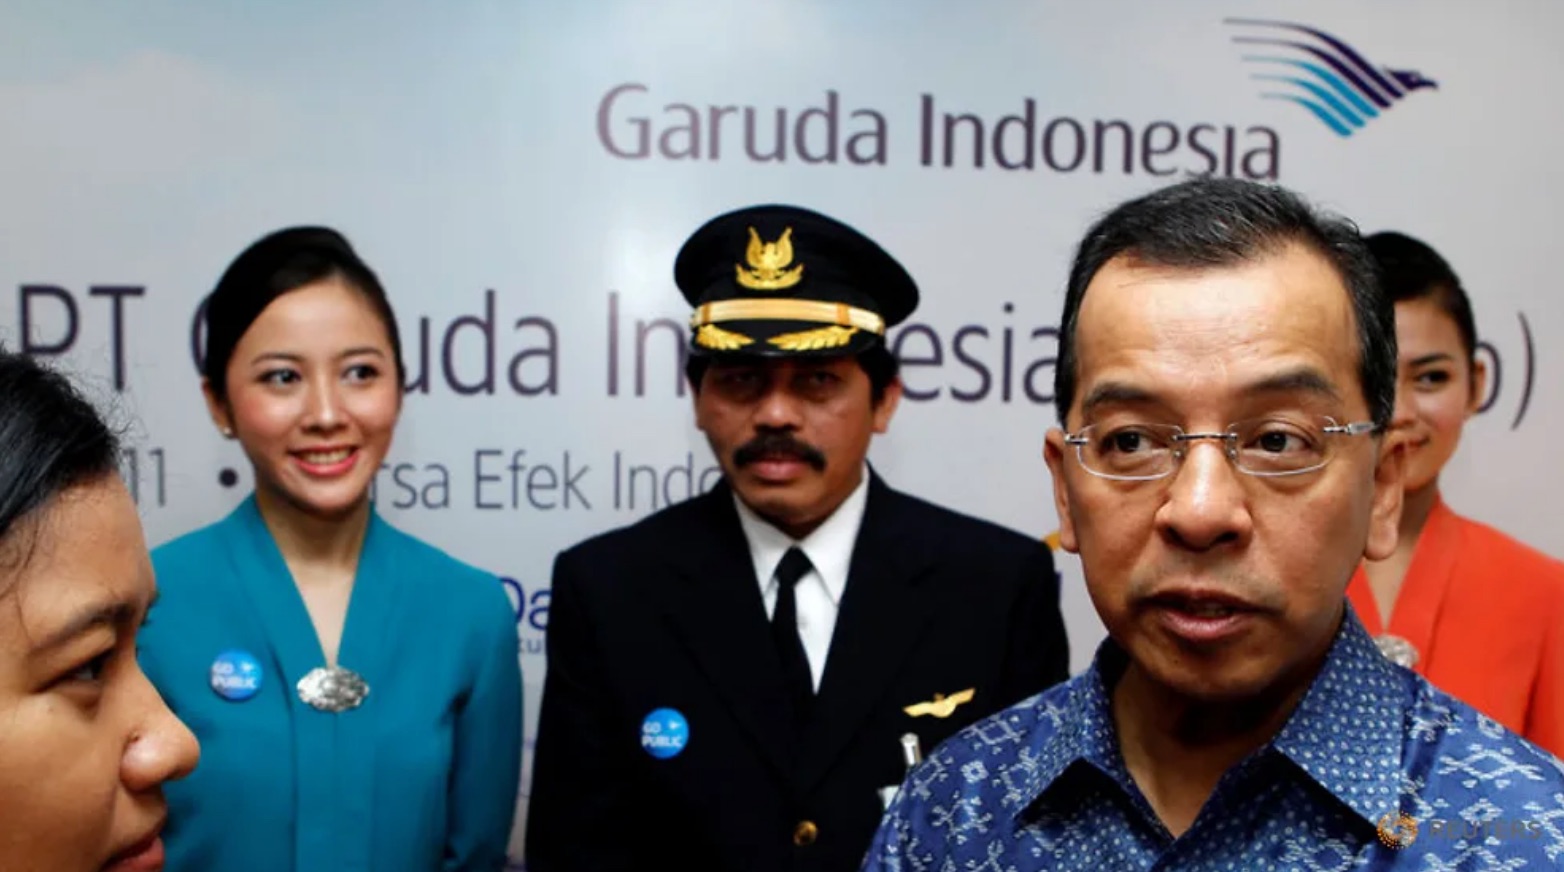 อินโดนีเซียจับกุมอดีตซีอีโอสายการบิน Garuda หลังปปช.ตัดสินคดีรับสินบนโรลส์รอยซ์